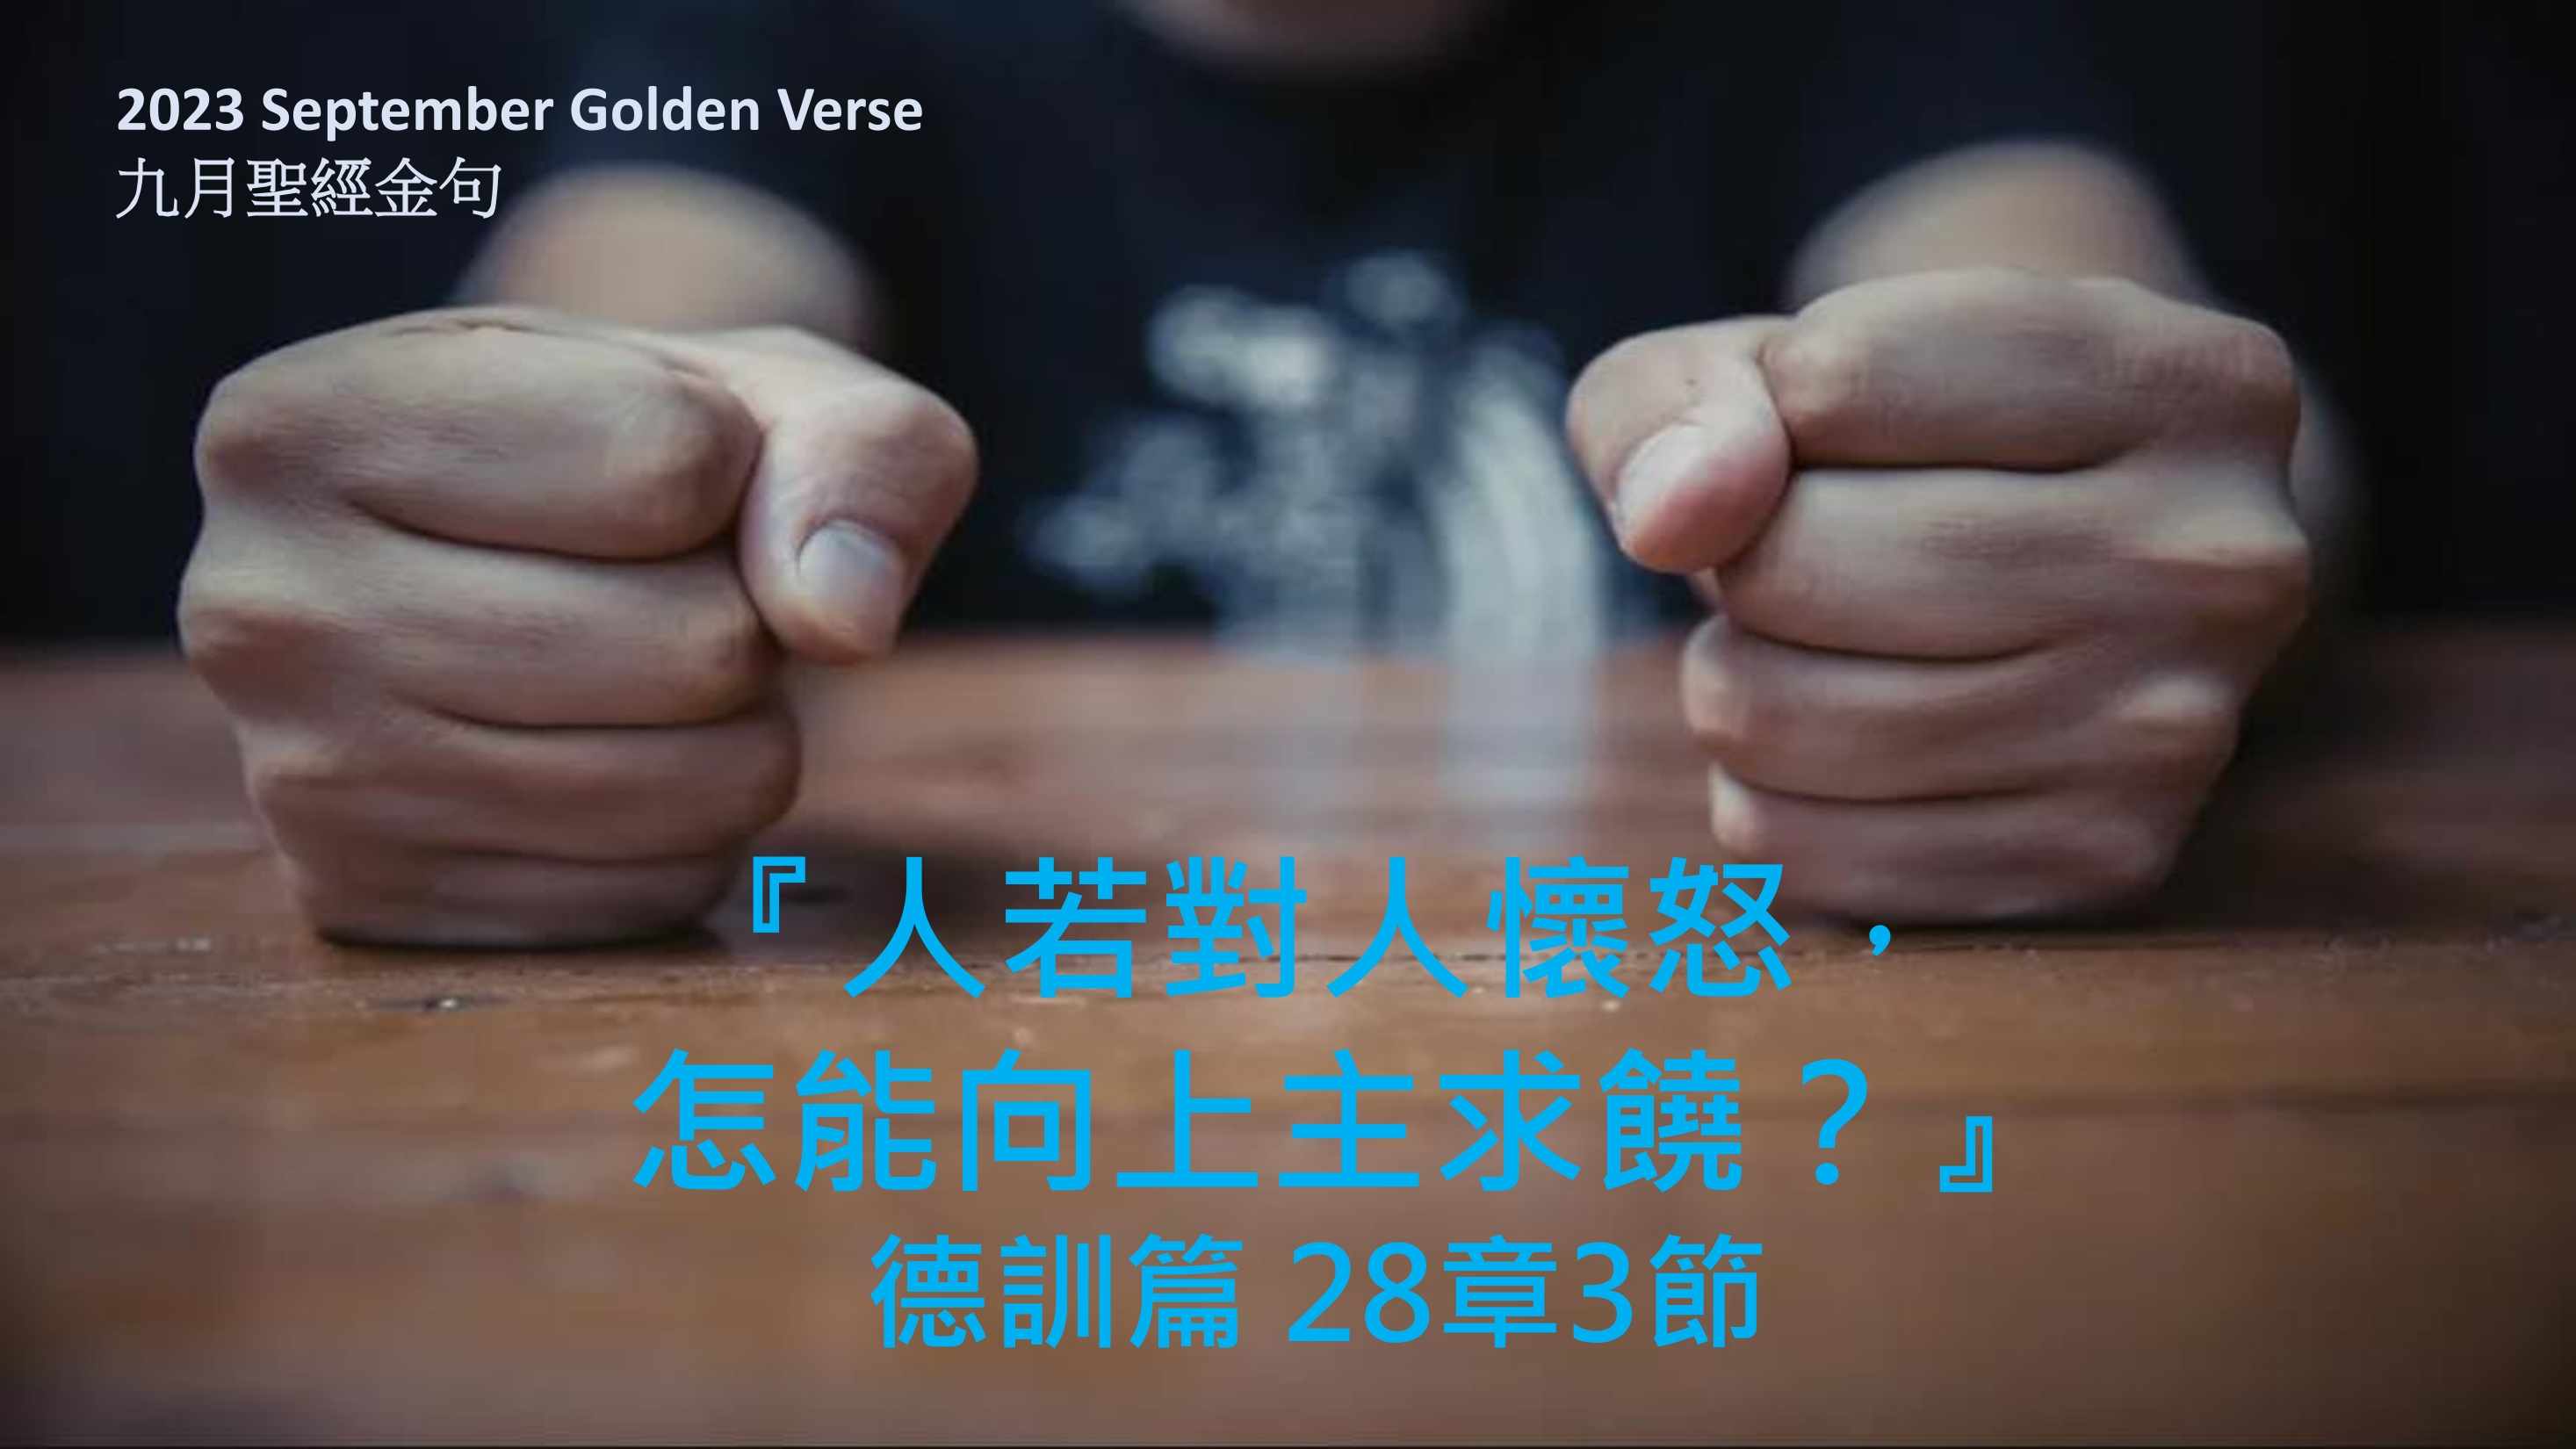 Golden-verse-202309-cn.jpg